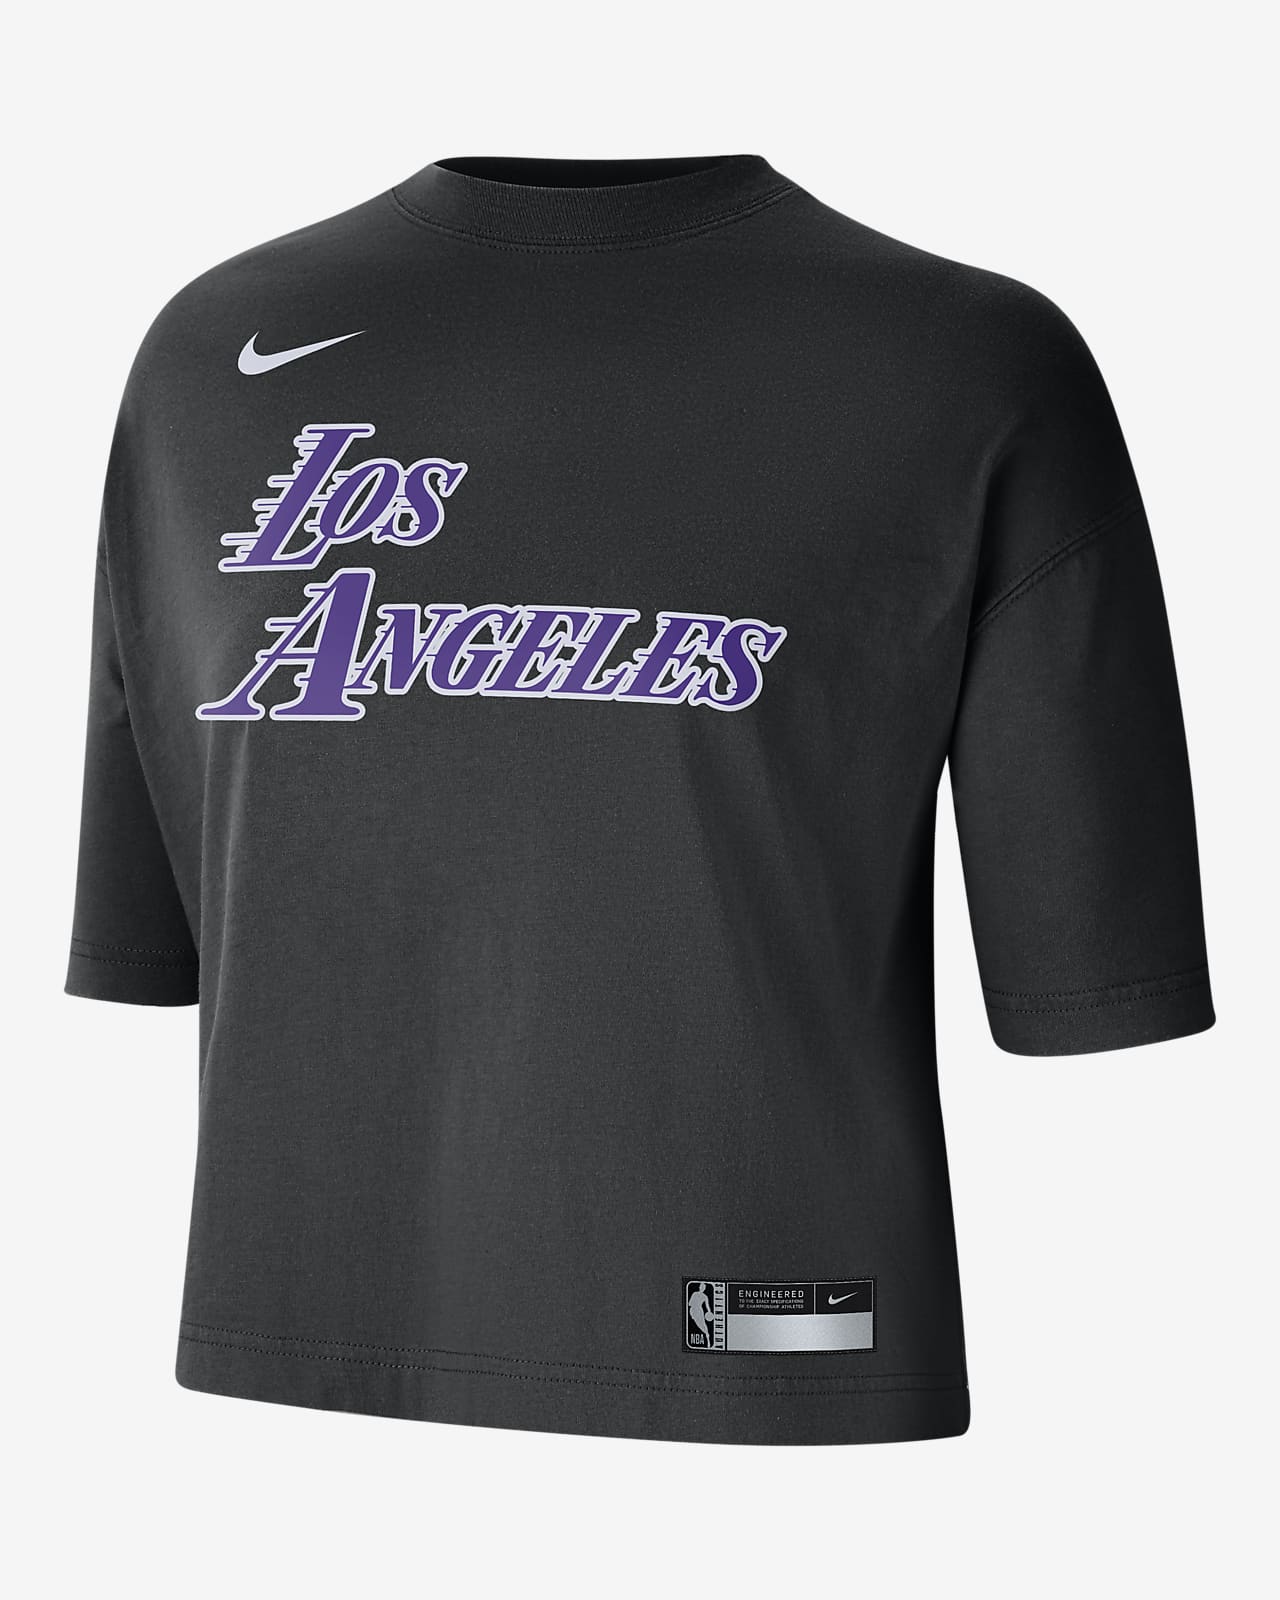 Playera Nike NBA para mujer Los Angeles Lakers Courtside City Edition